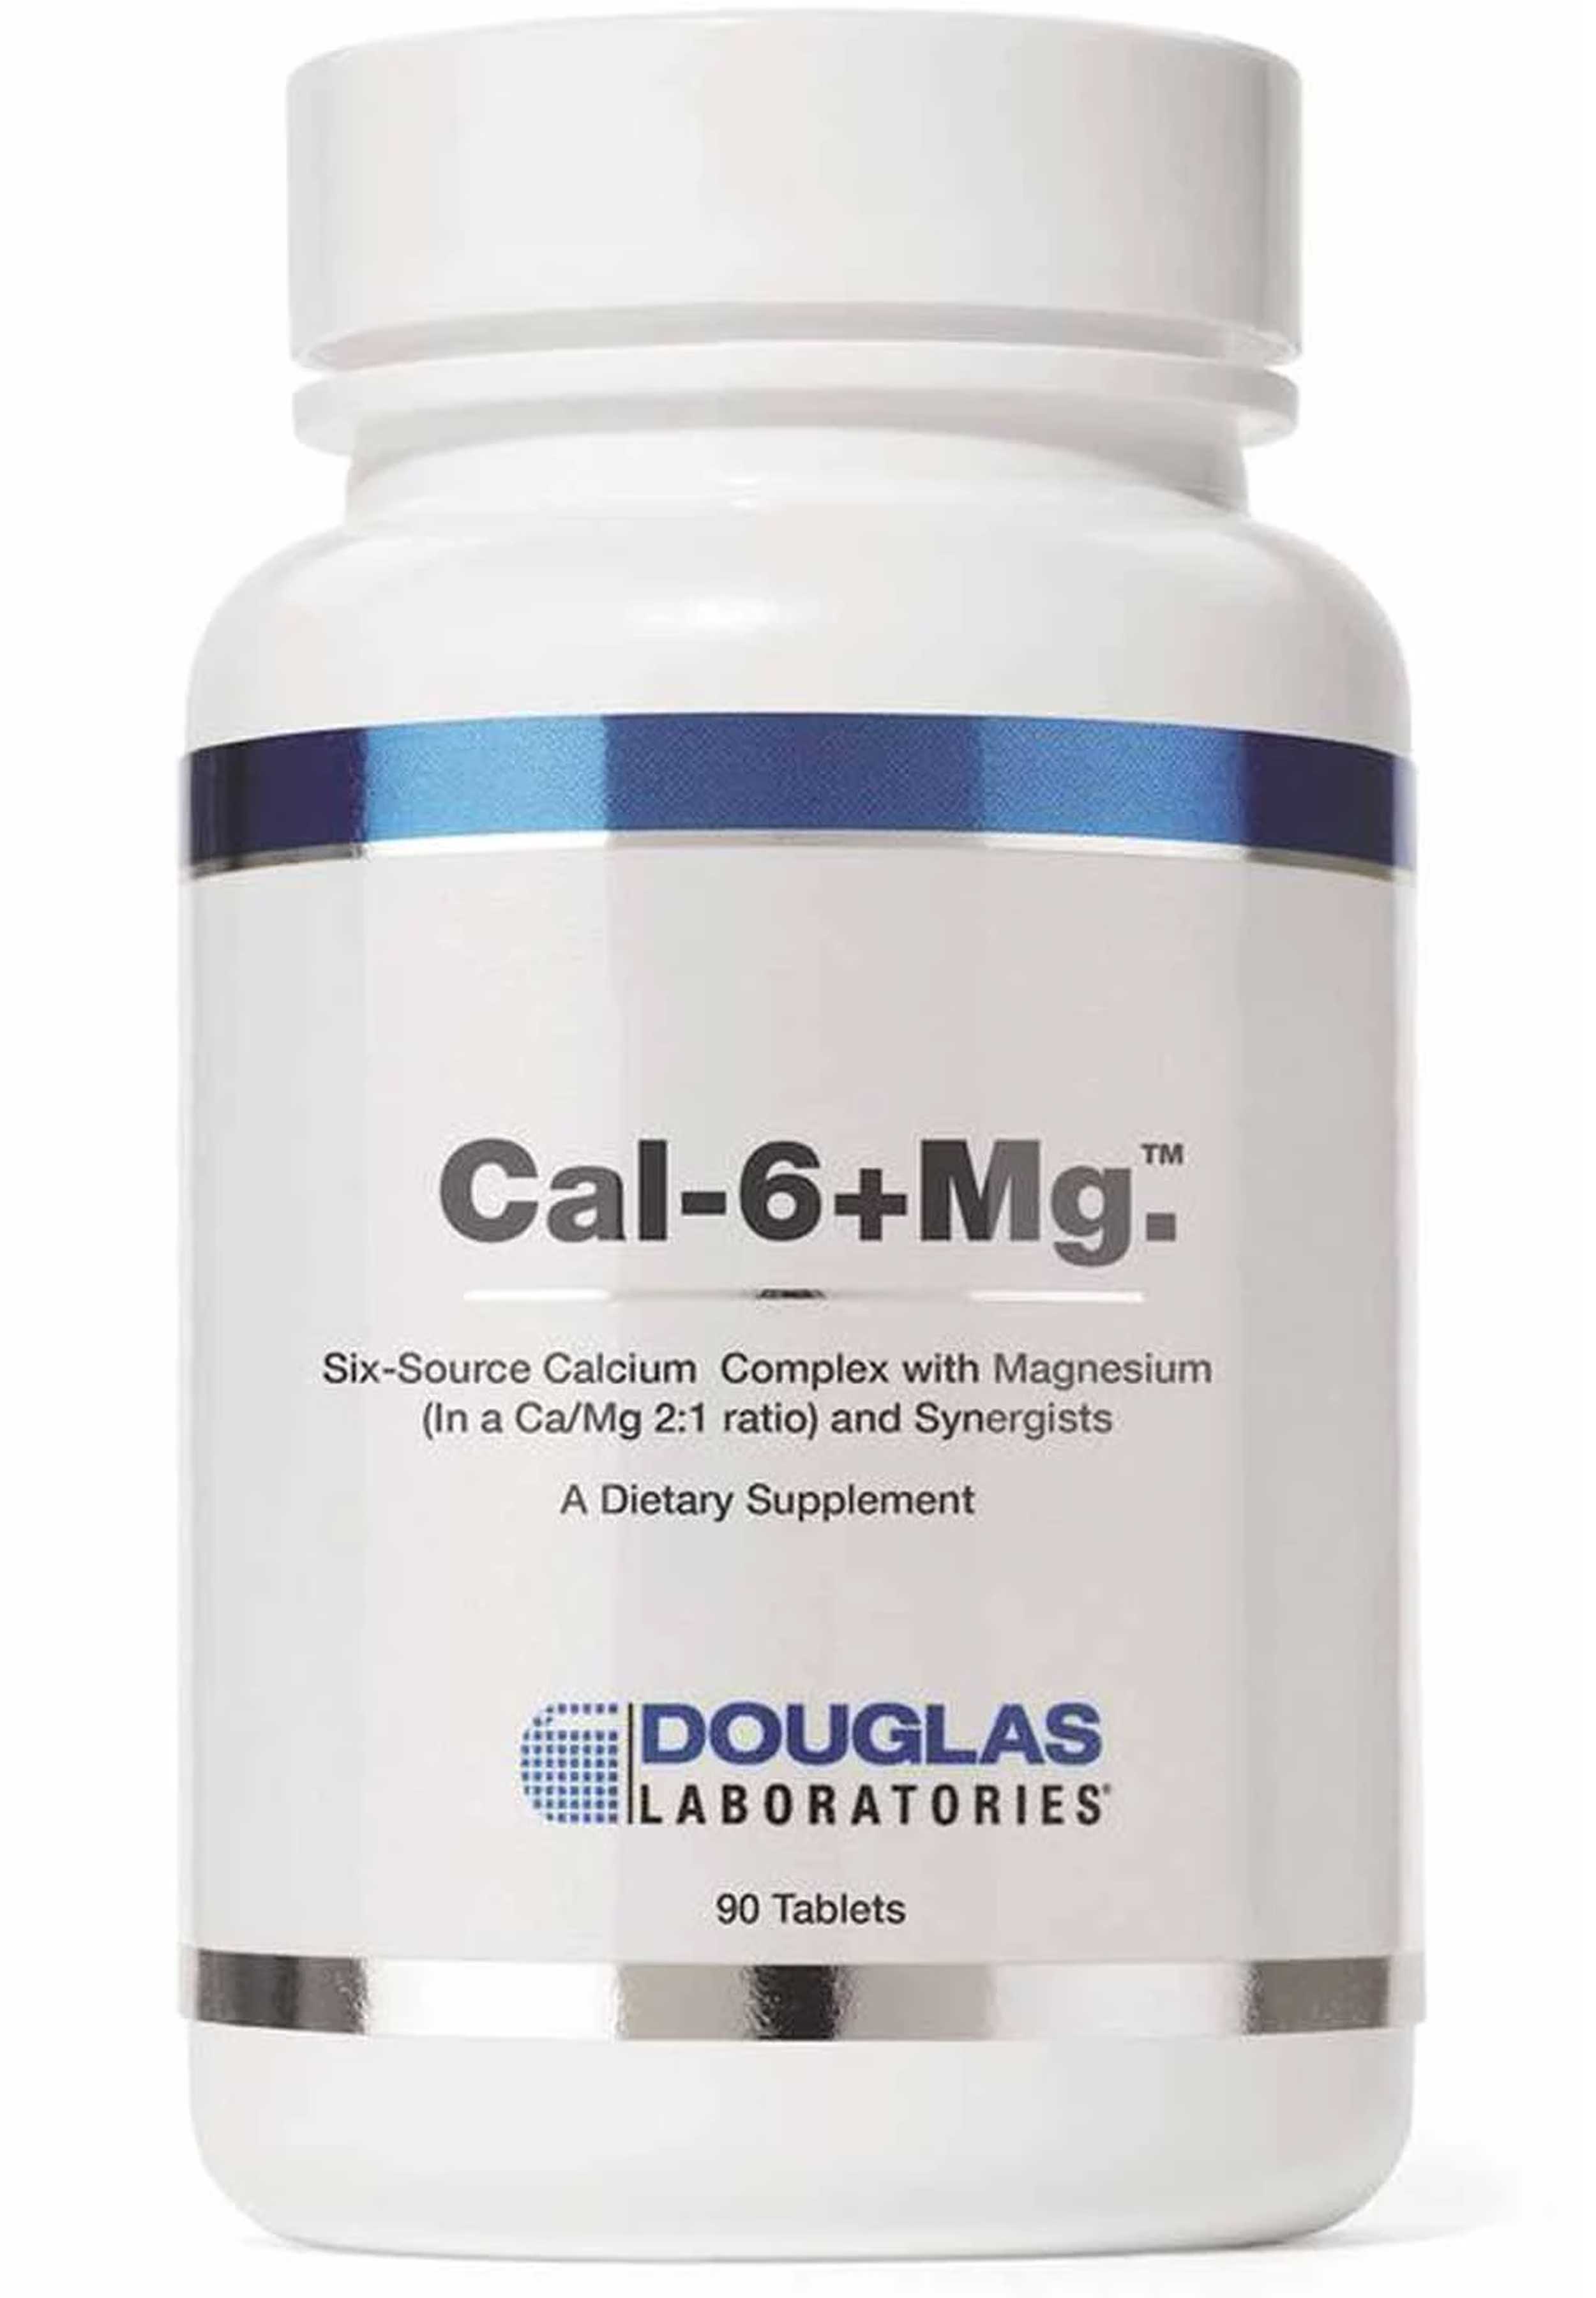 Douglas Laboratories Cal-6+Mg.